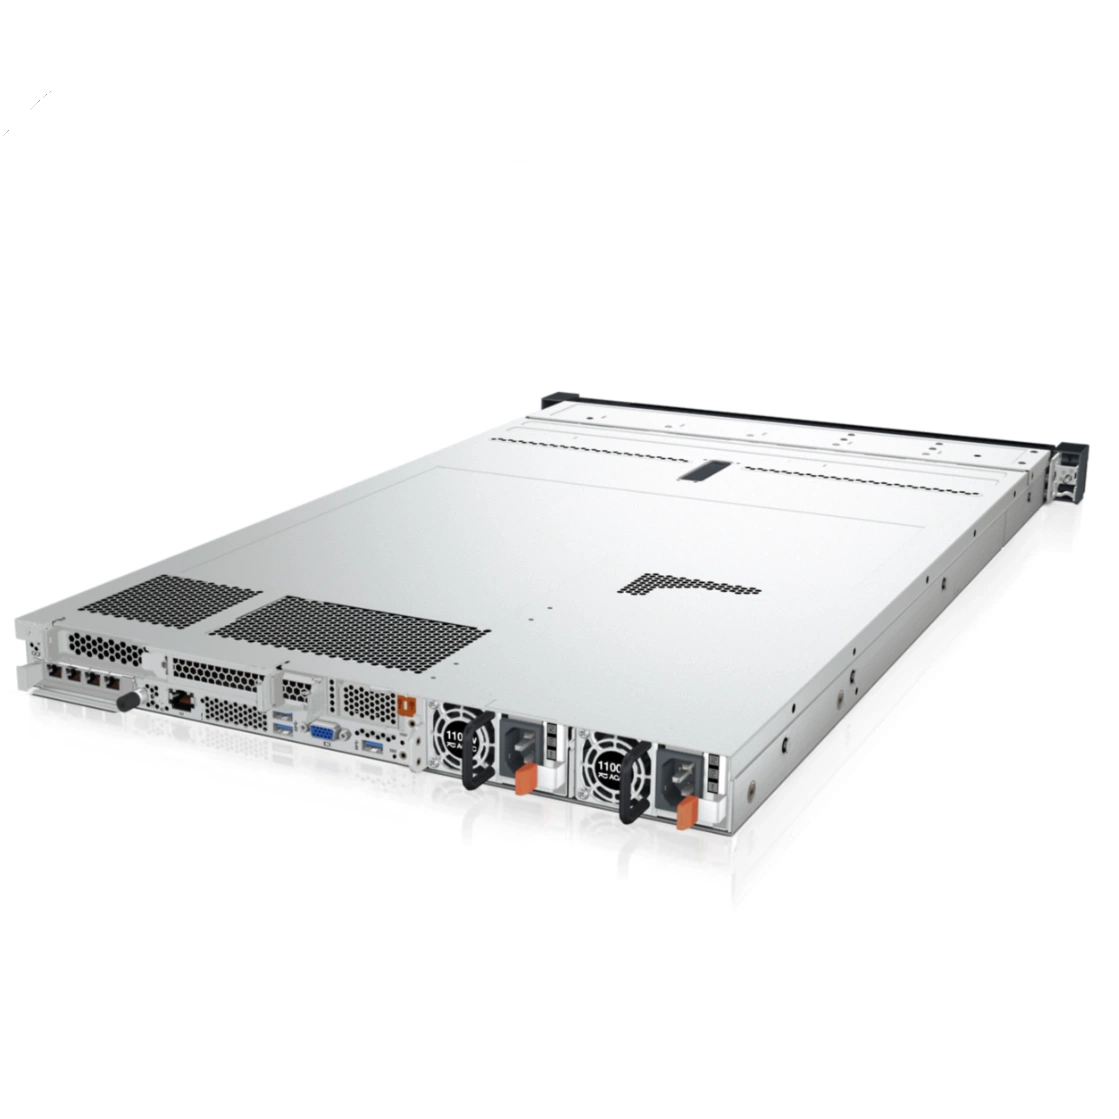 L Enovo Thinksystem SR630 V2 Server en tel Xeon 4309Plata y servidor para rack de 1U.